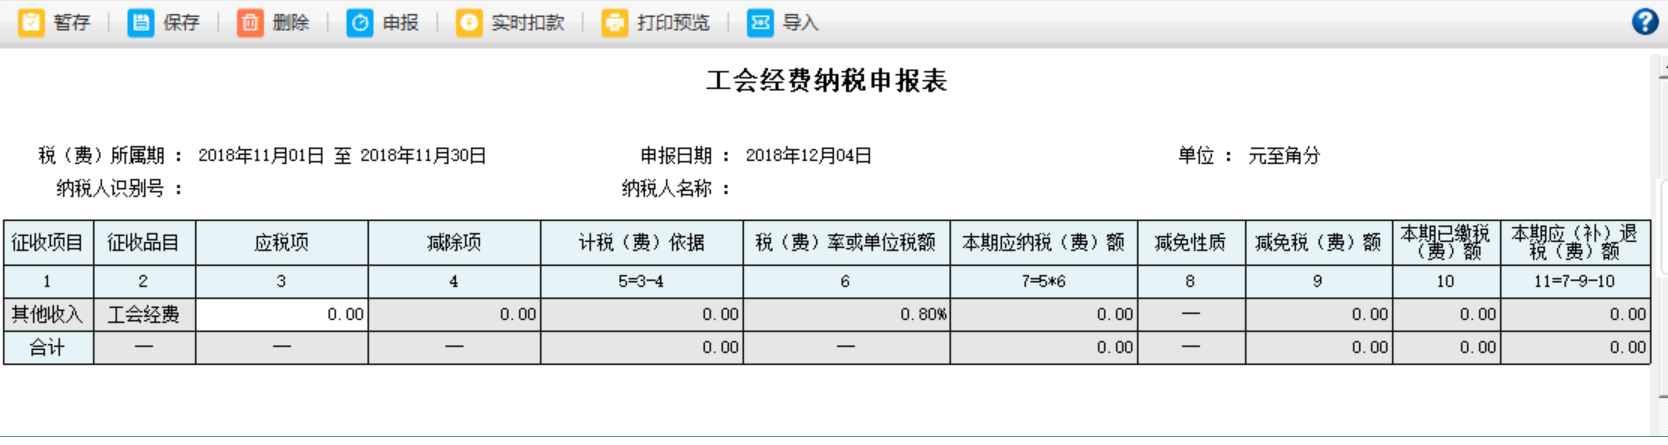 河南省电子税务局工会经费纳税申报表内容删除